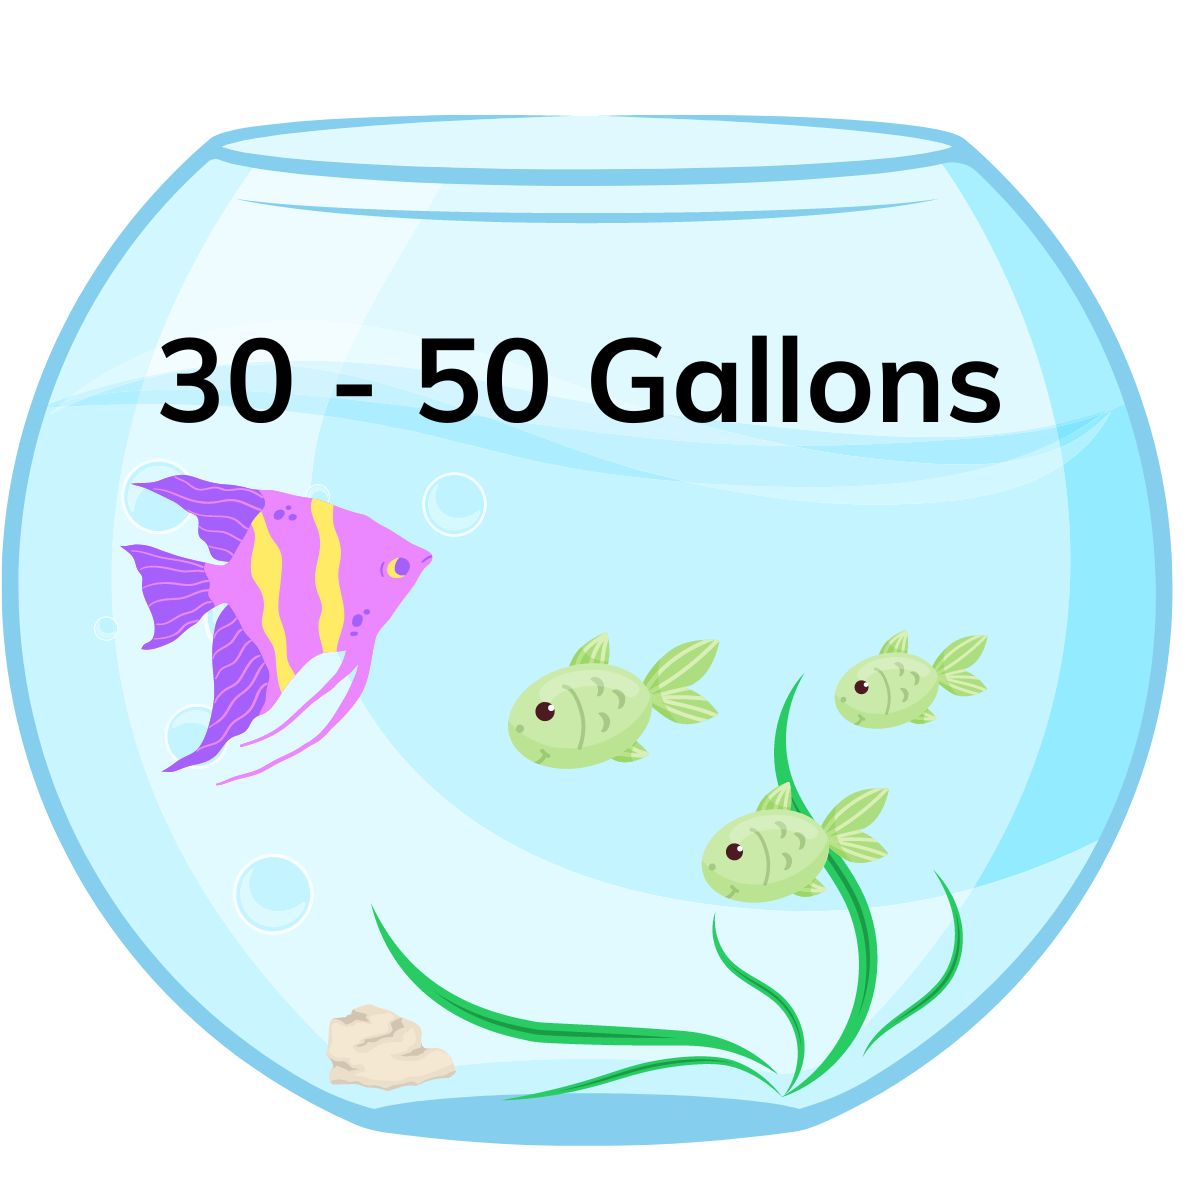 30 - 50 gallon tank